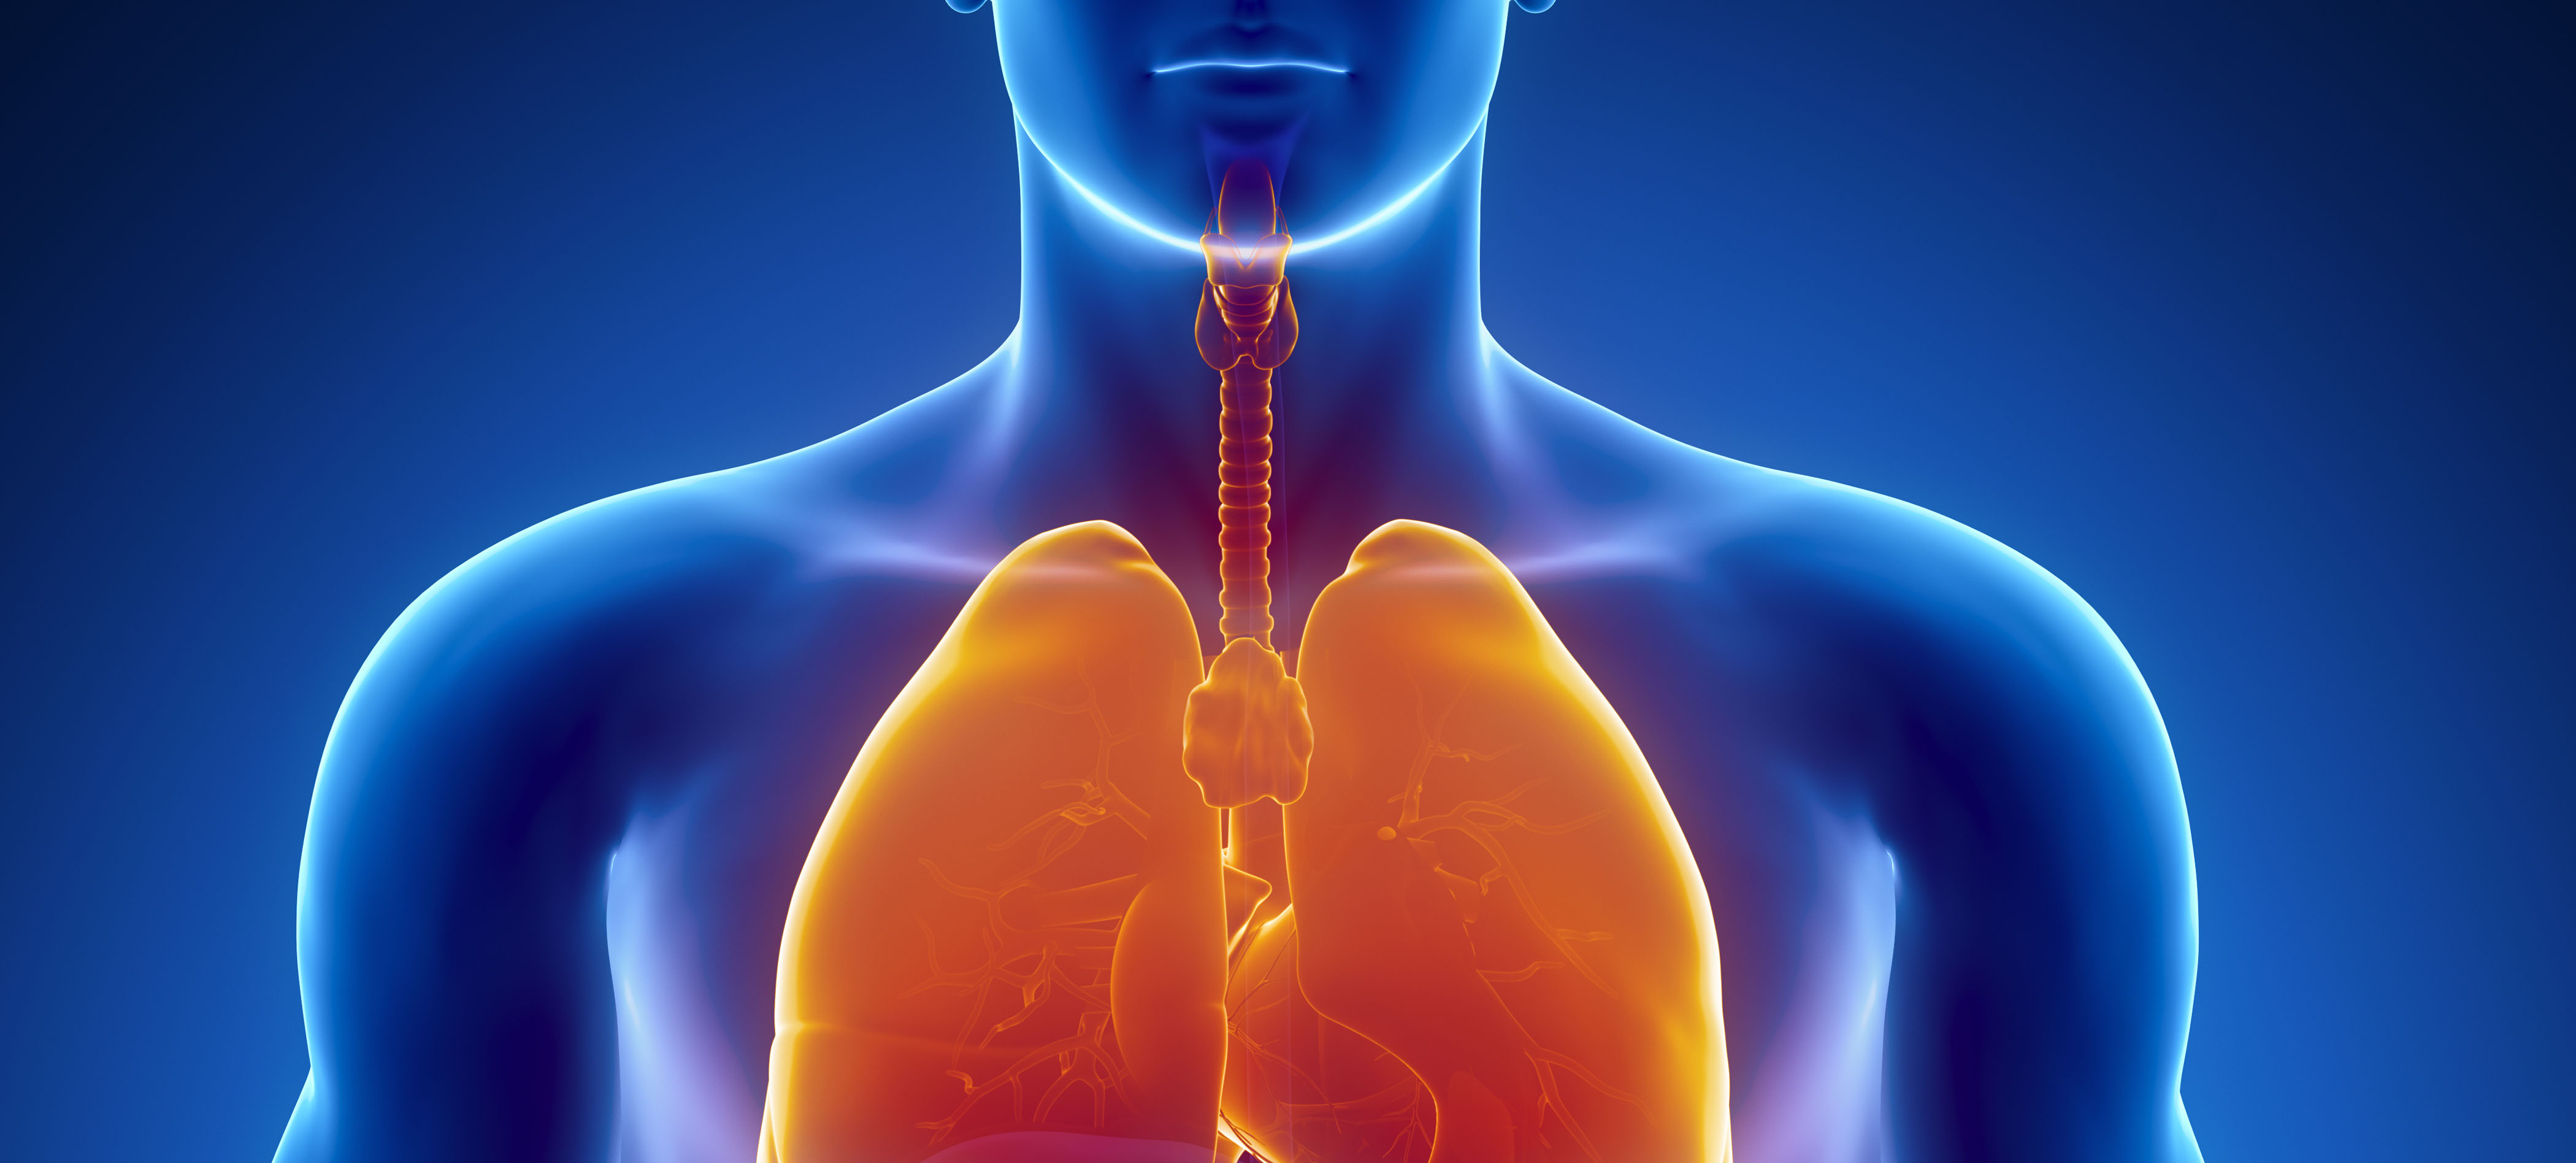 Патологии дыхательных путей. Заболевания органов дыхания. Заболевания дыхательных путей. Поражение органов дыхания. Воспалительные заболевания органов дыхания.